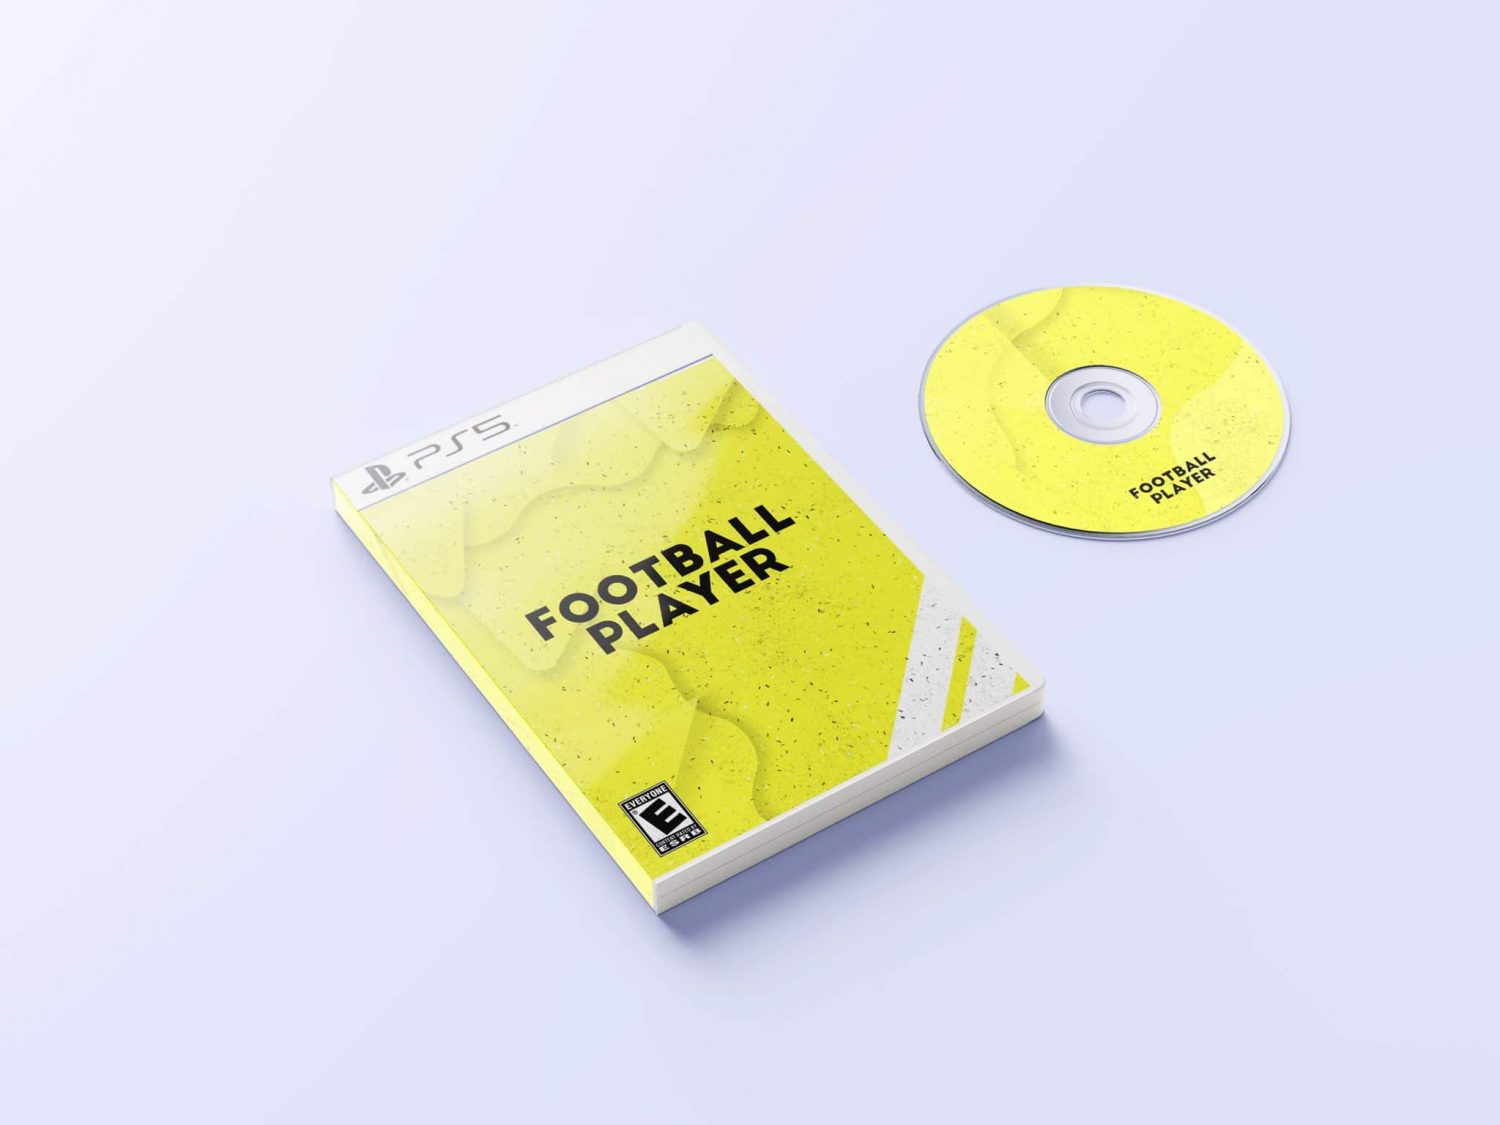 Novo jogo de futebol, Football Player é anunciado para o PS5